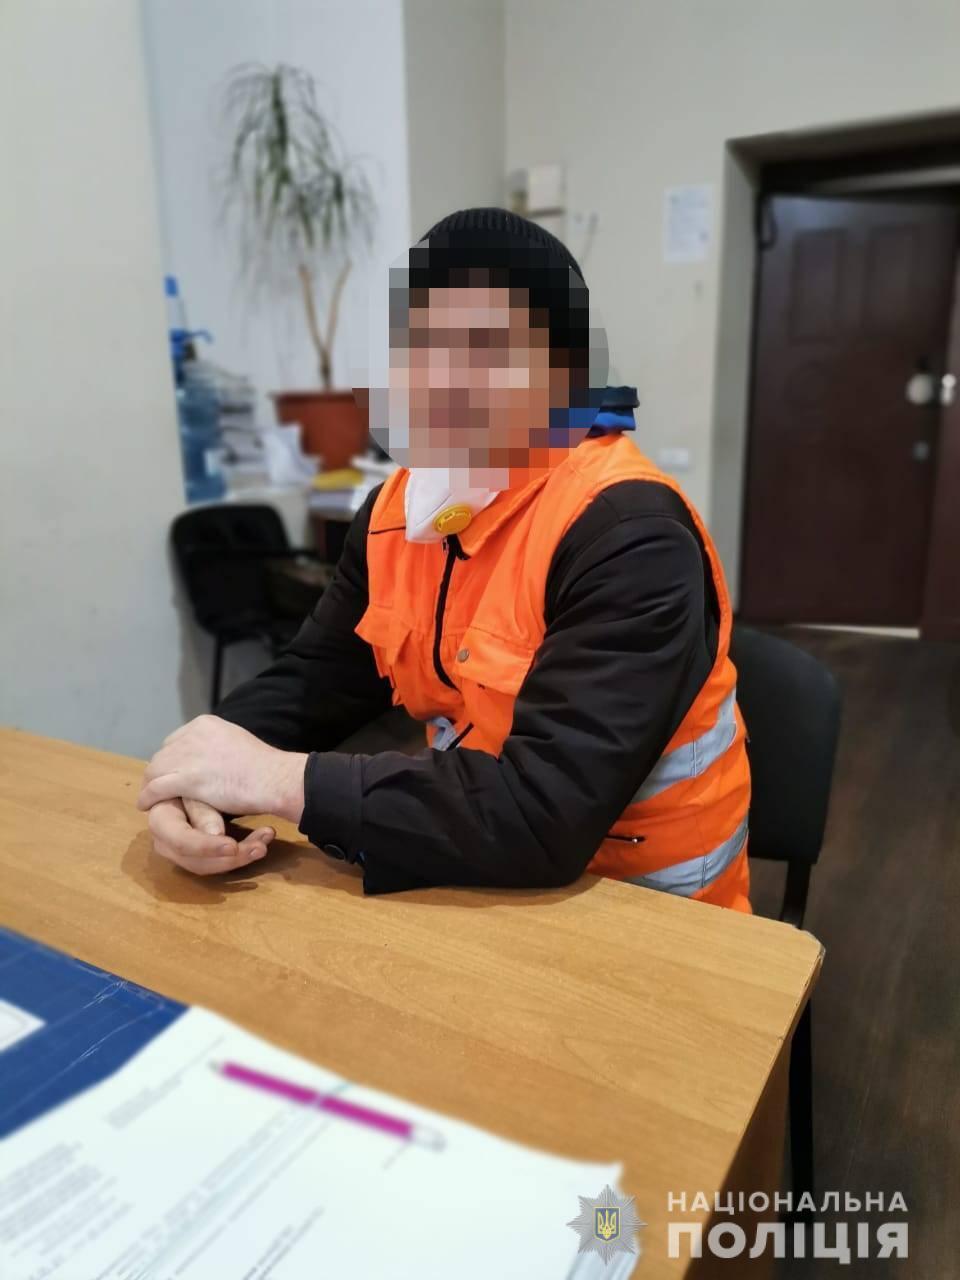 Поліцейські затримали чоловіка за неправдиве повідомлення про замінування п’яти будівель комунальних підприємств Одеси